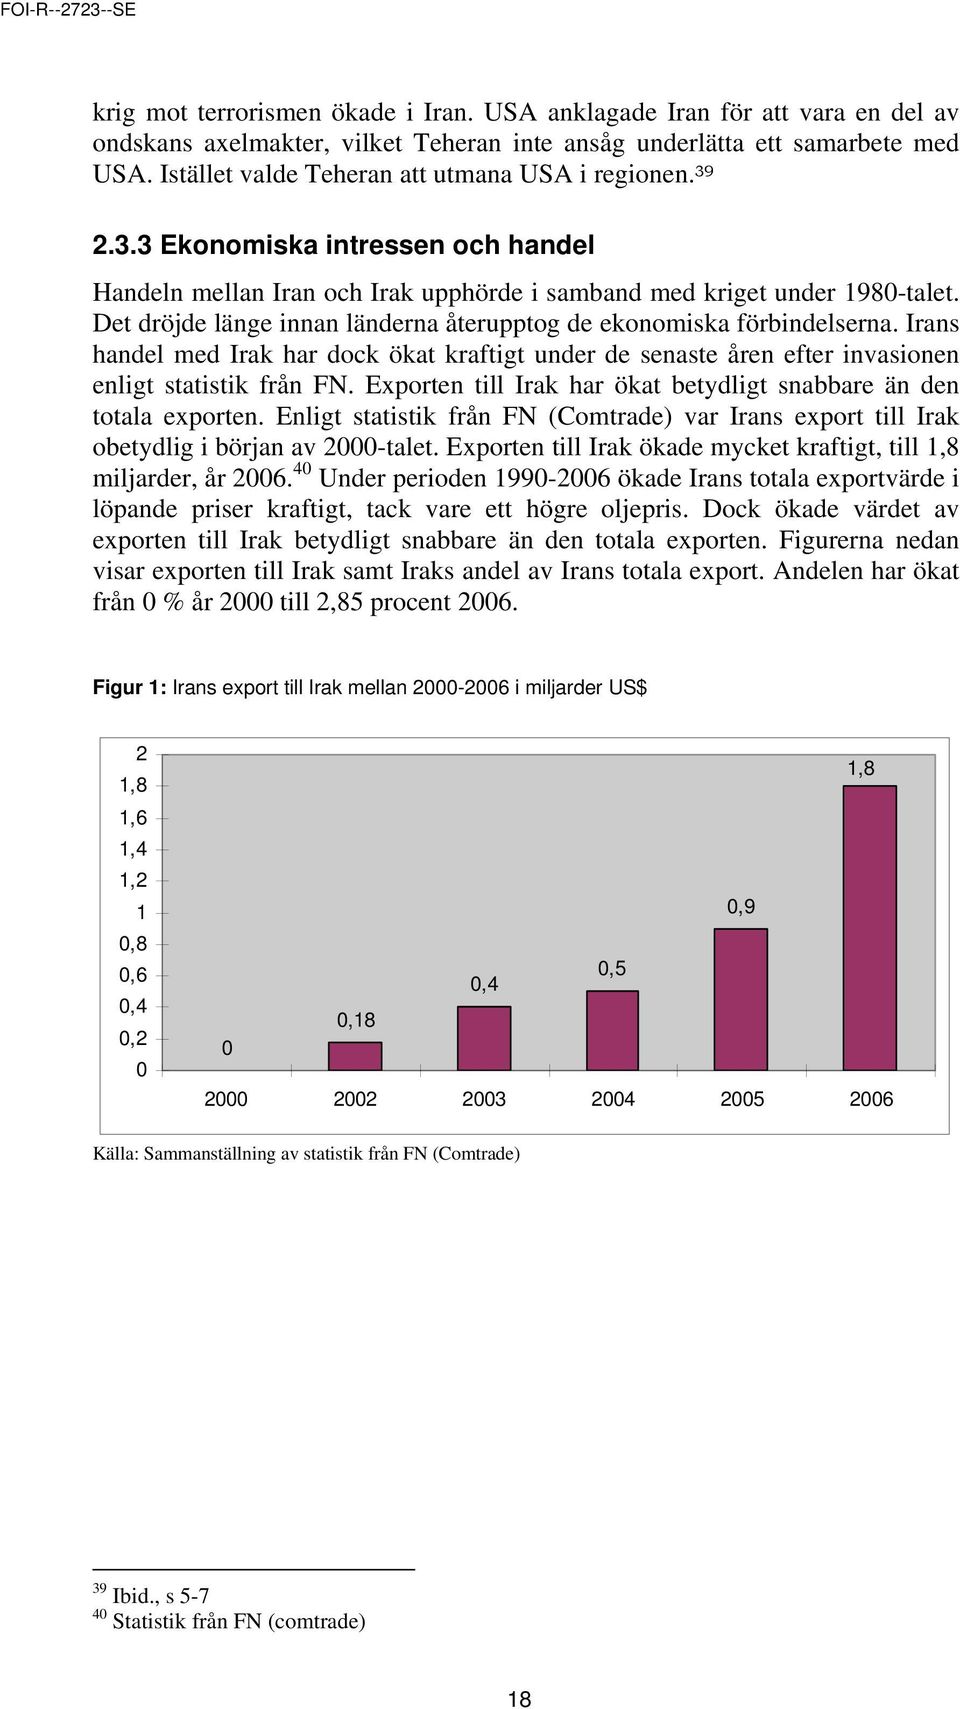 Det dröjde länge innan länderna återupptog de ekonomiska förbindelserna. Irans handel med Irak har dock ökat kraftigt under de senaste åren efter invasionen enligt statistik från FN.